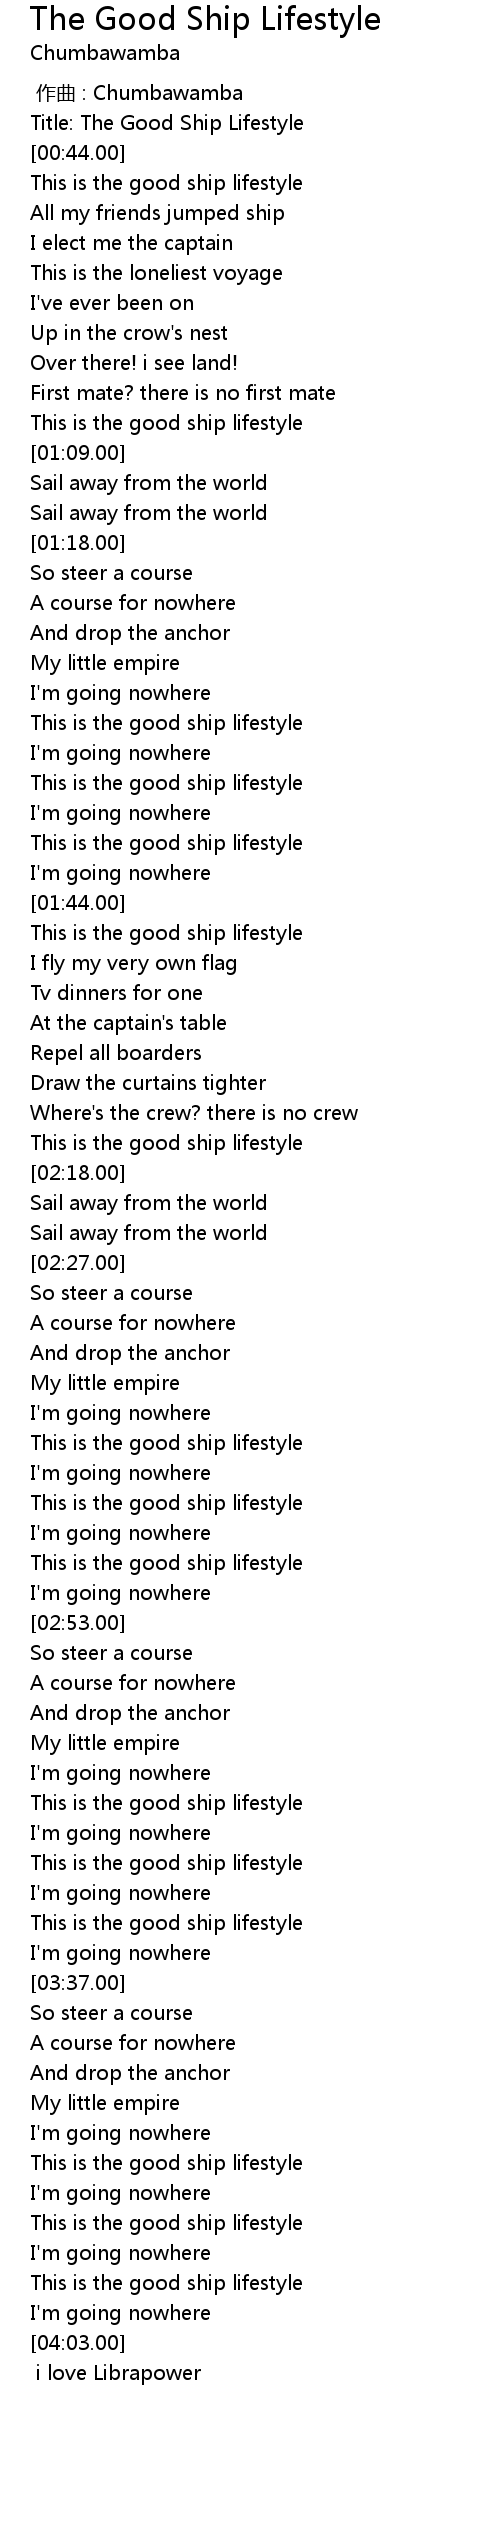 The Good Ship Lifestyle Lyrics Follow Lyrics